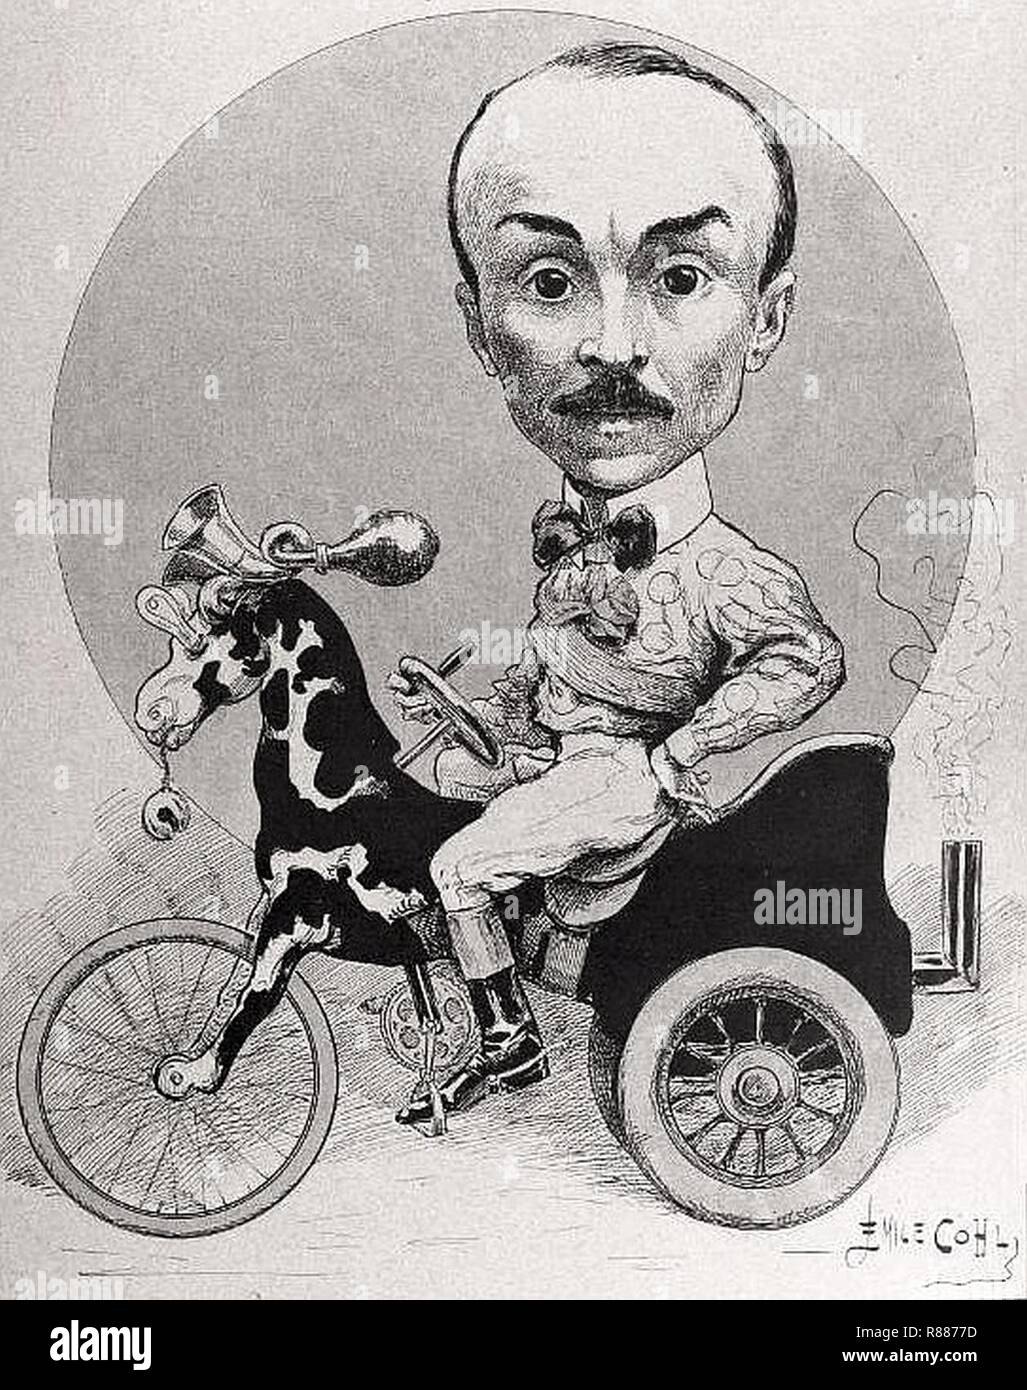 La caricatura de Fernand Charron par Émile Cohl, en sportif éclectique (1901). Foto Stock